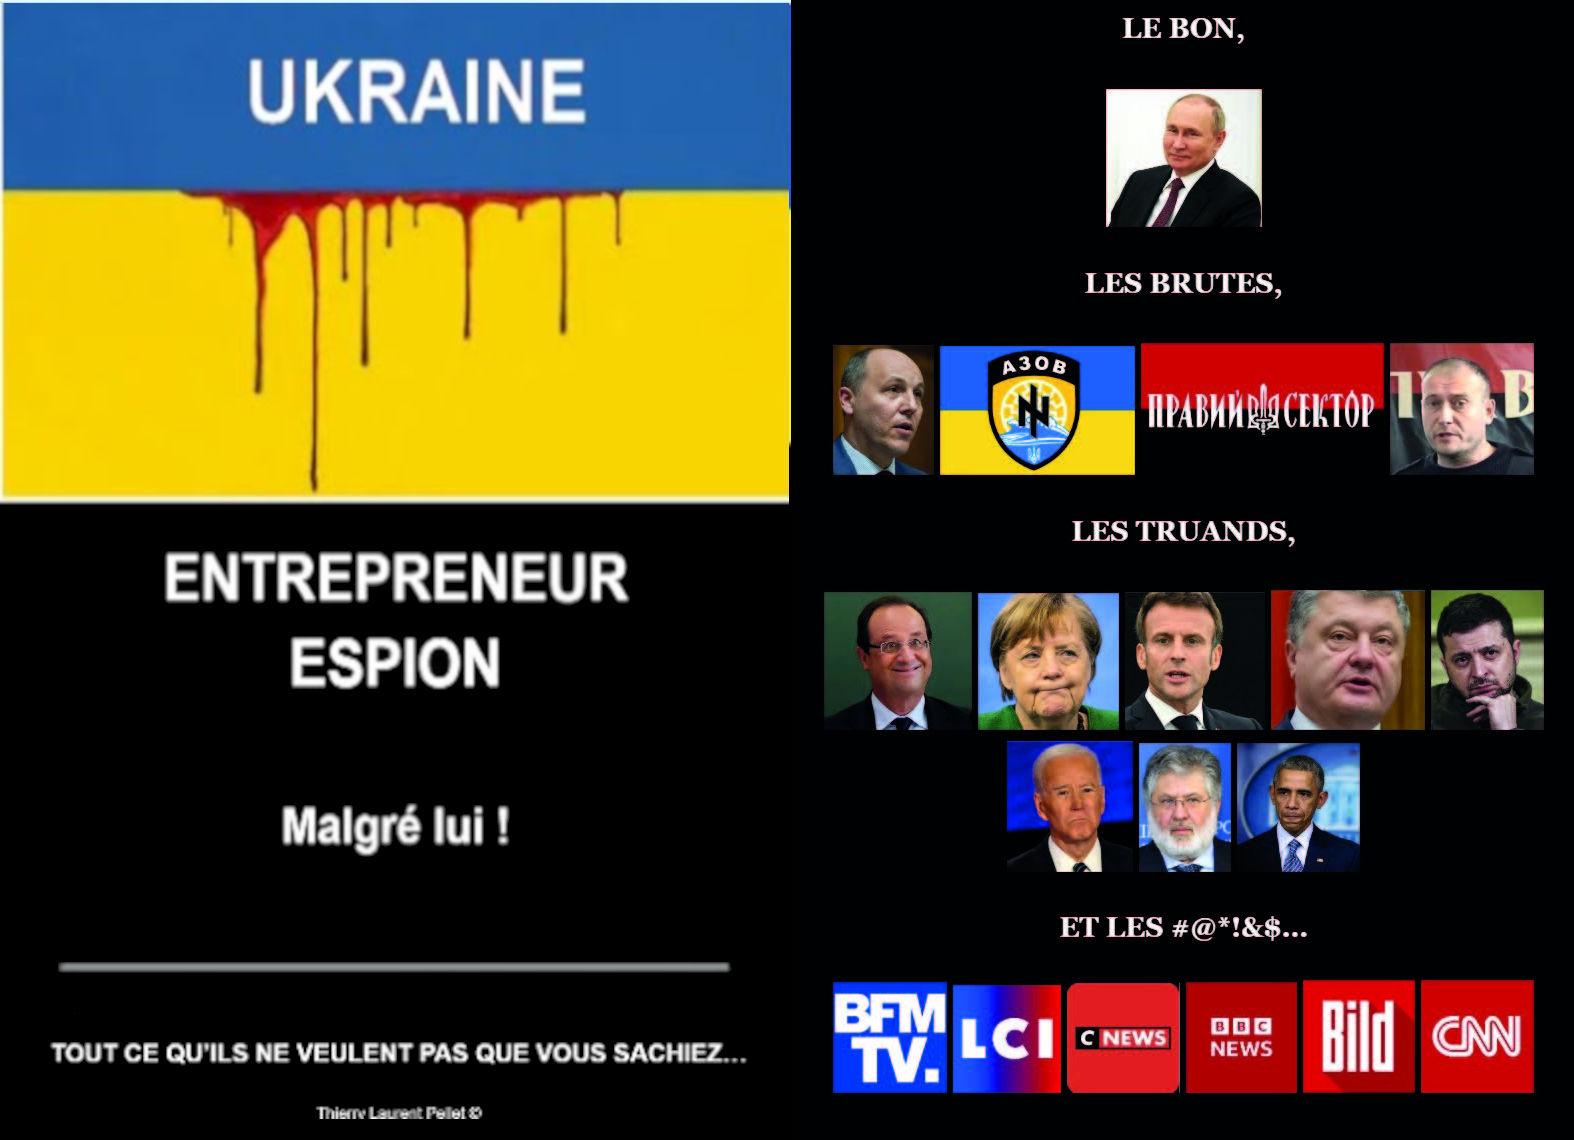 Ukraine, entrepreneur espion malgré lui